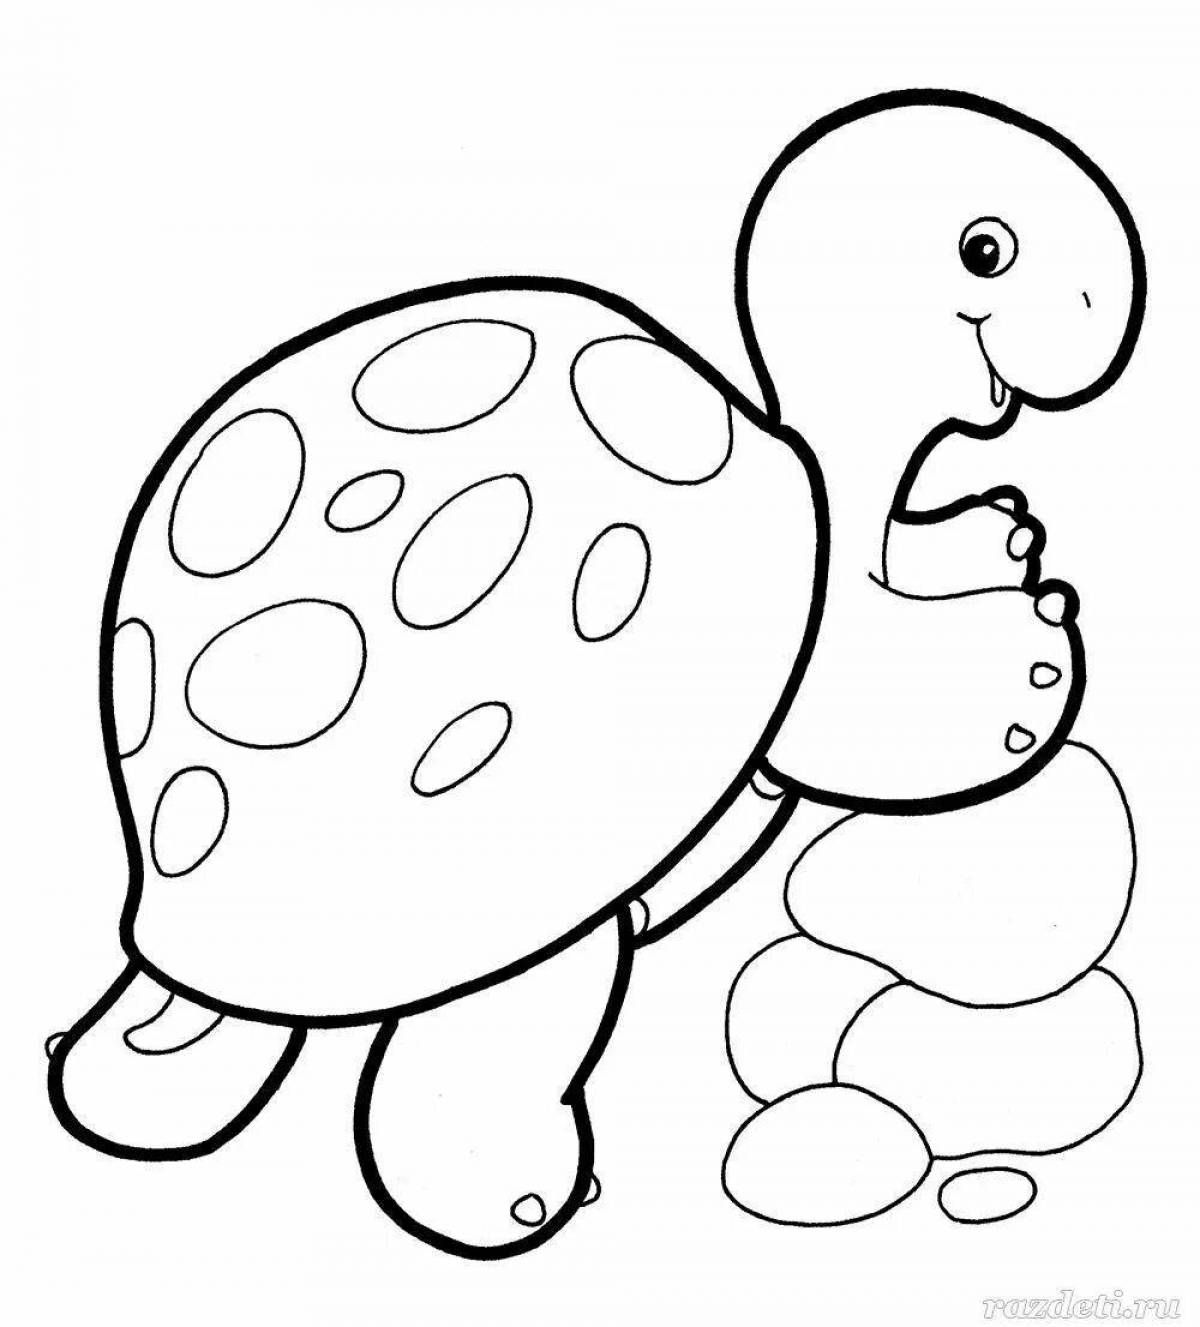 Выдающаяся черепаха-раскраска для детей